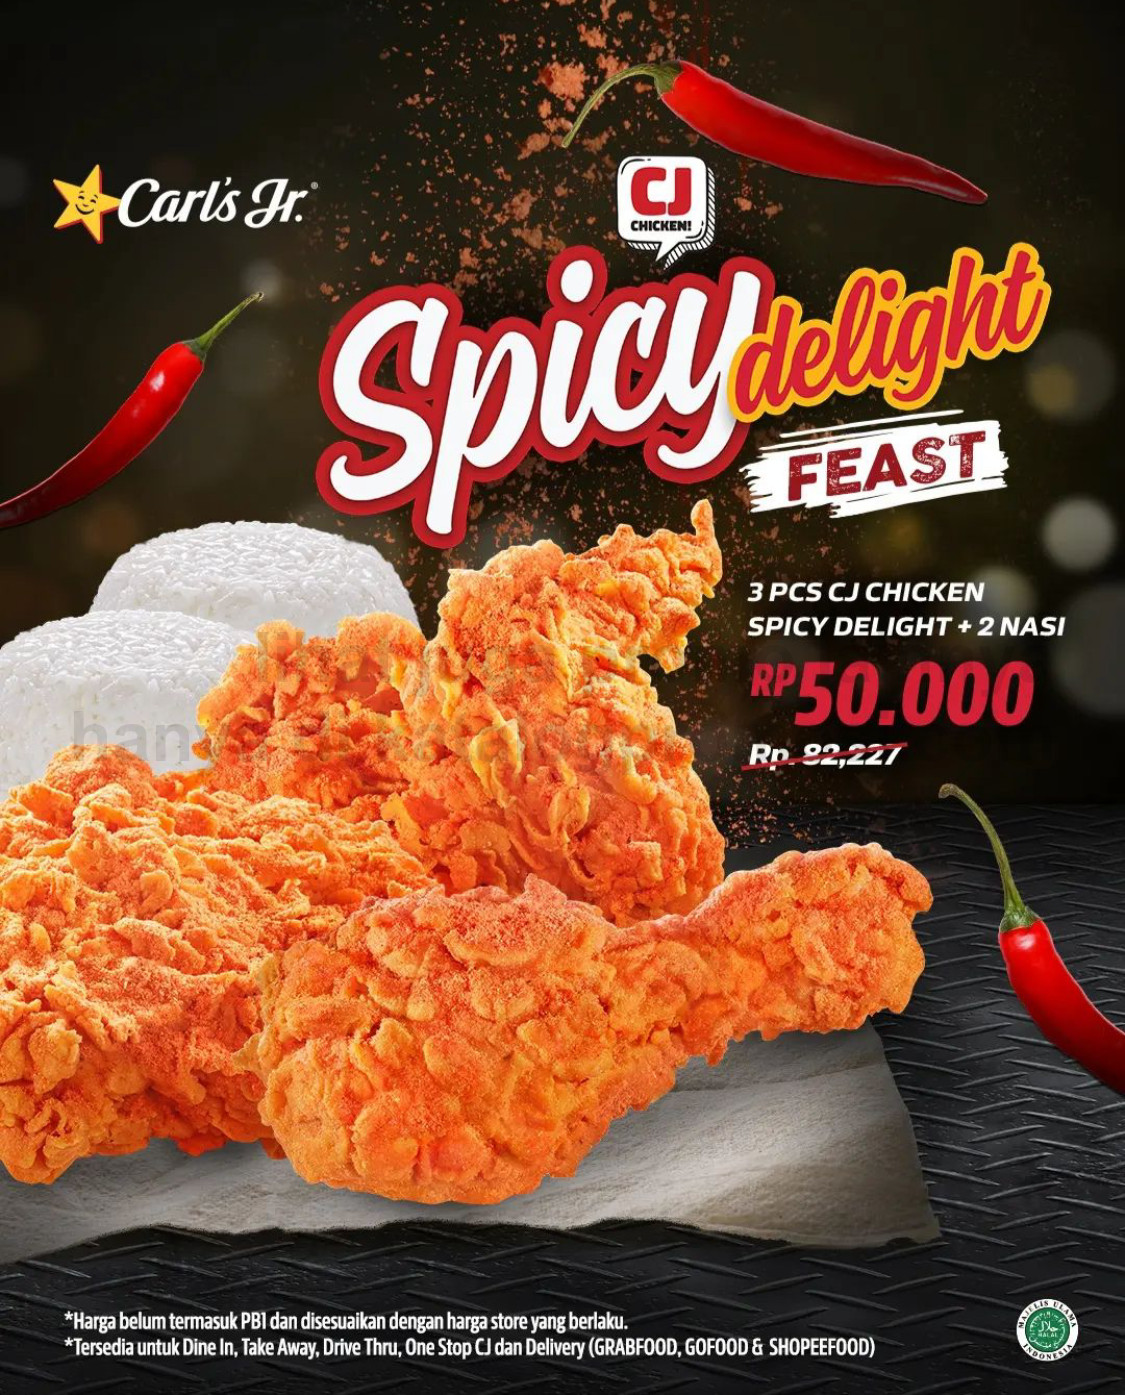 Promo CARLS JR SPICY DELIGHT FEAST - 3 pcs CJ Chicken Spicy Delight dan 2 Nasi cuma Rp. 50.000